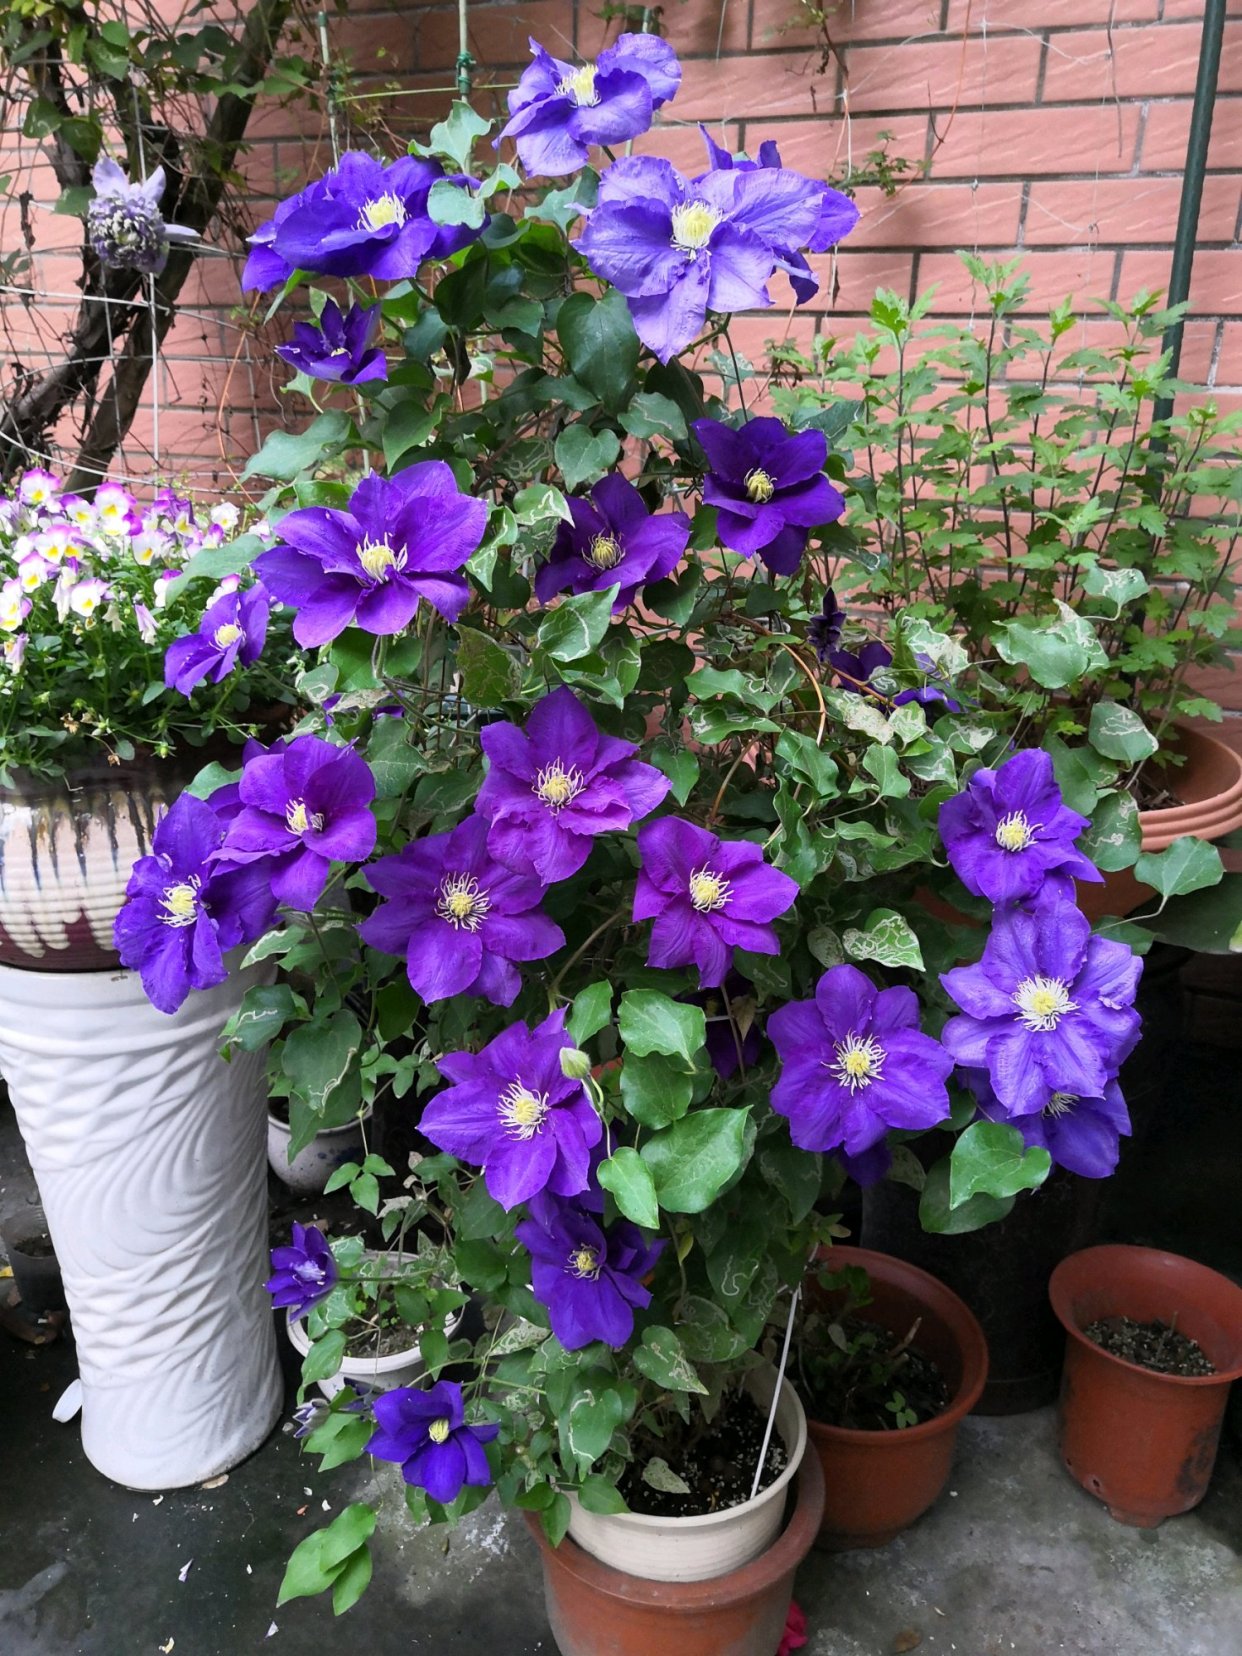 你喜欢蓝色花卉吗?养棵铁线莲翠鸟吧,梦幻蓝色,多季能赏花